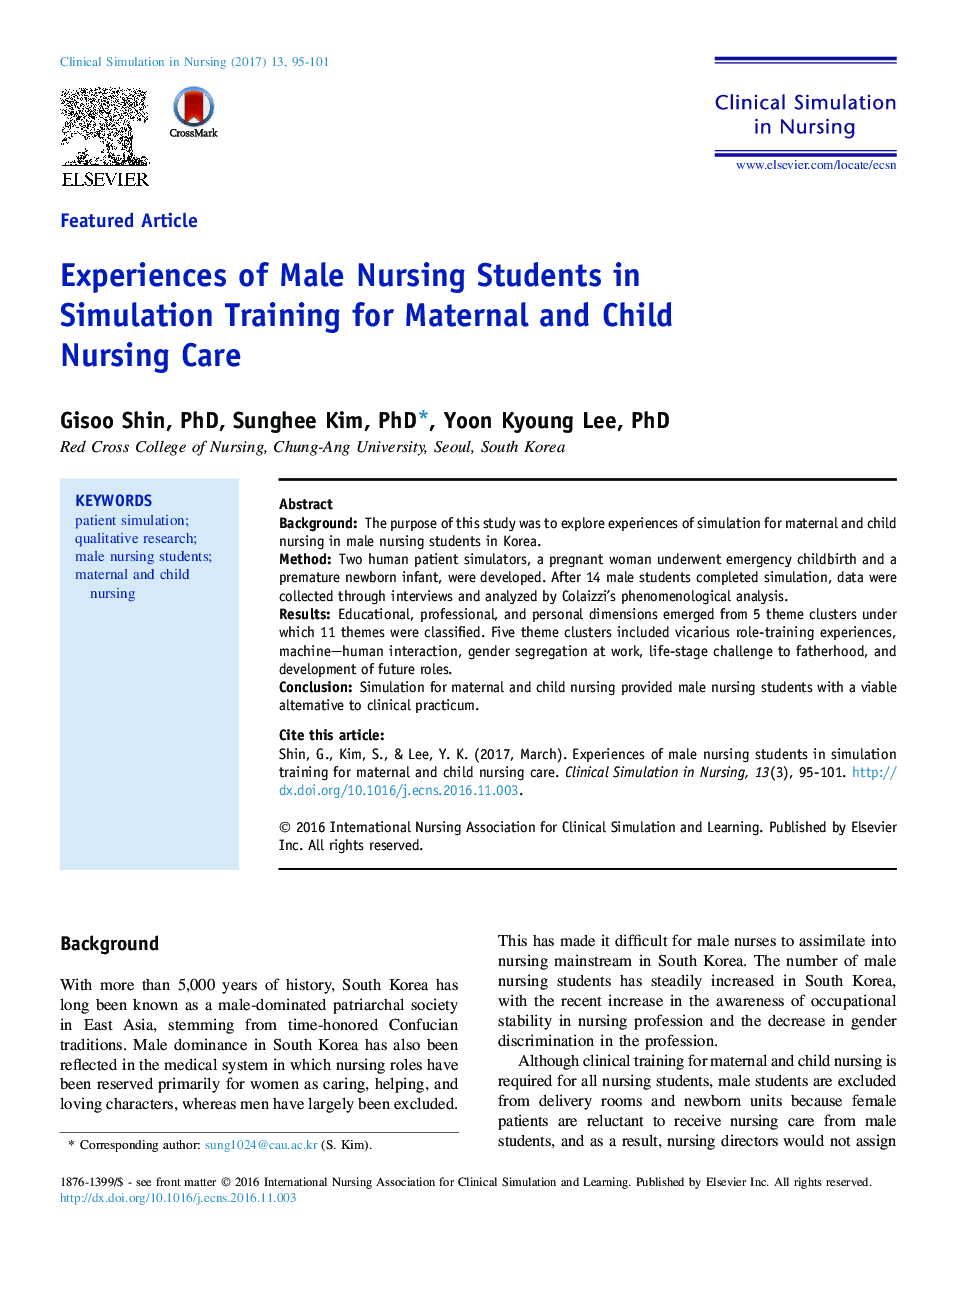 تجارب دانشجویان پرستاری مرد در آموزش شبیه سازی برای مراقبت از پرستاری مادر و کودک 